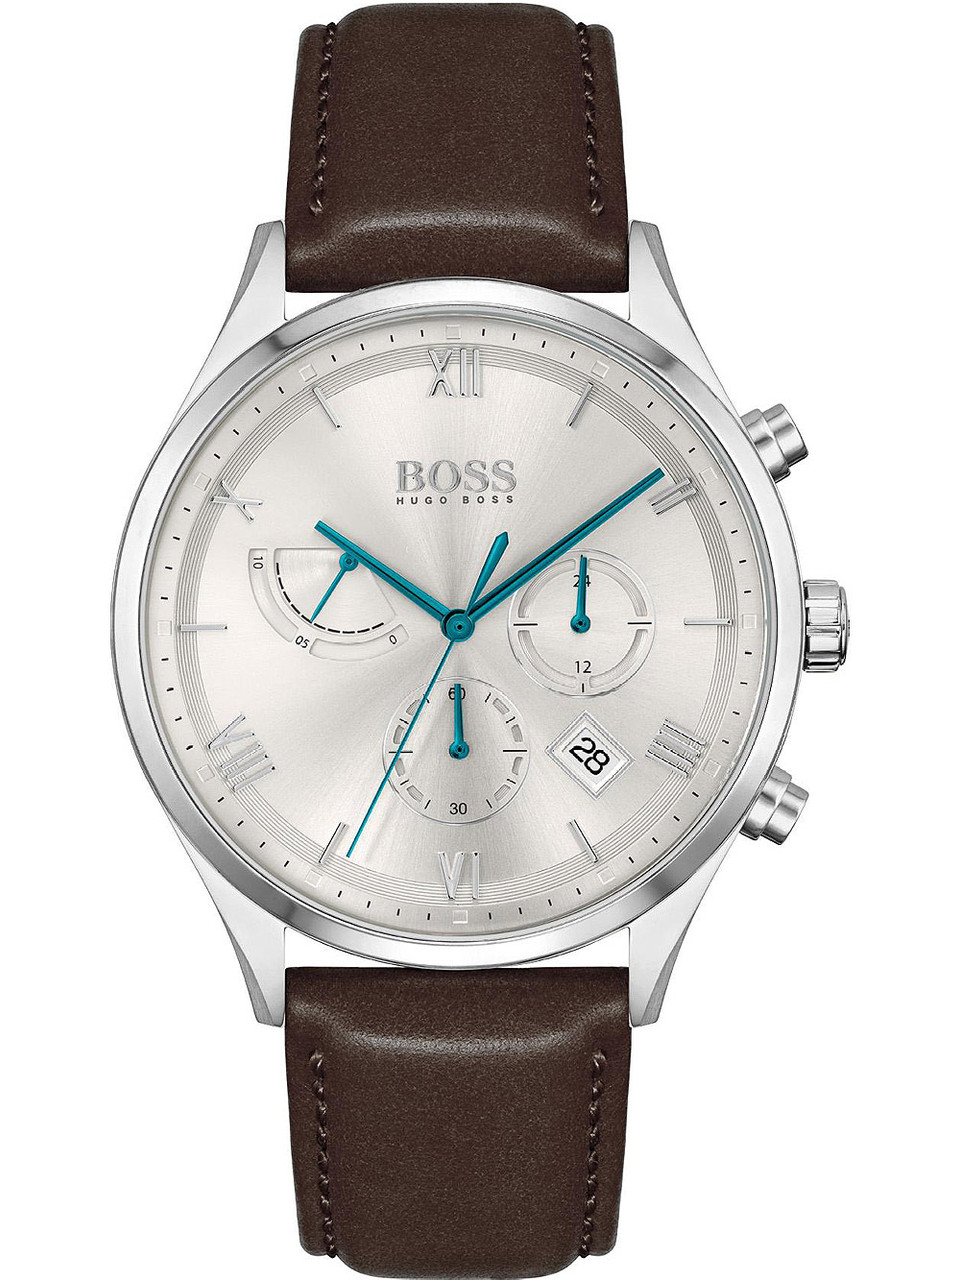 Hugo Boss 1513889 Gallant chrono | Genuine Watches - 5ATM 44mm owlica